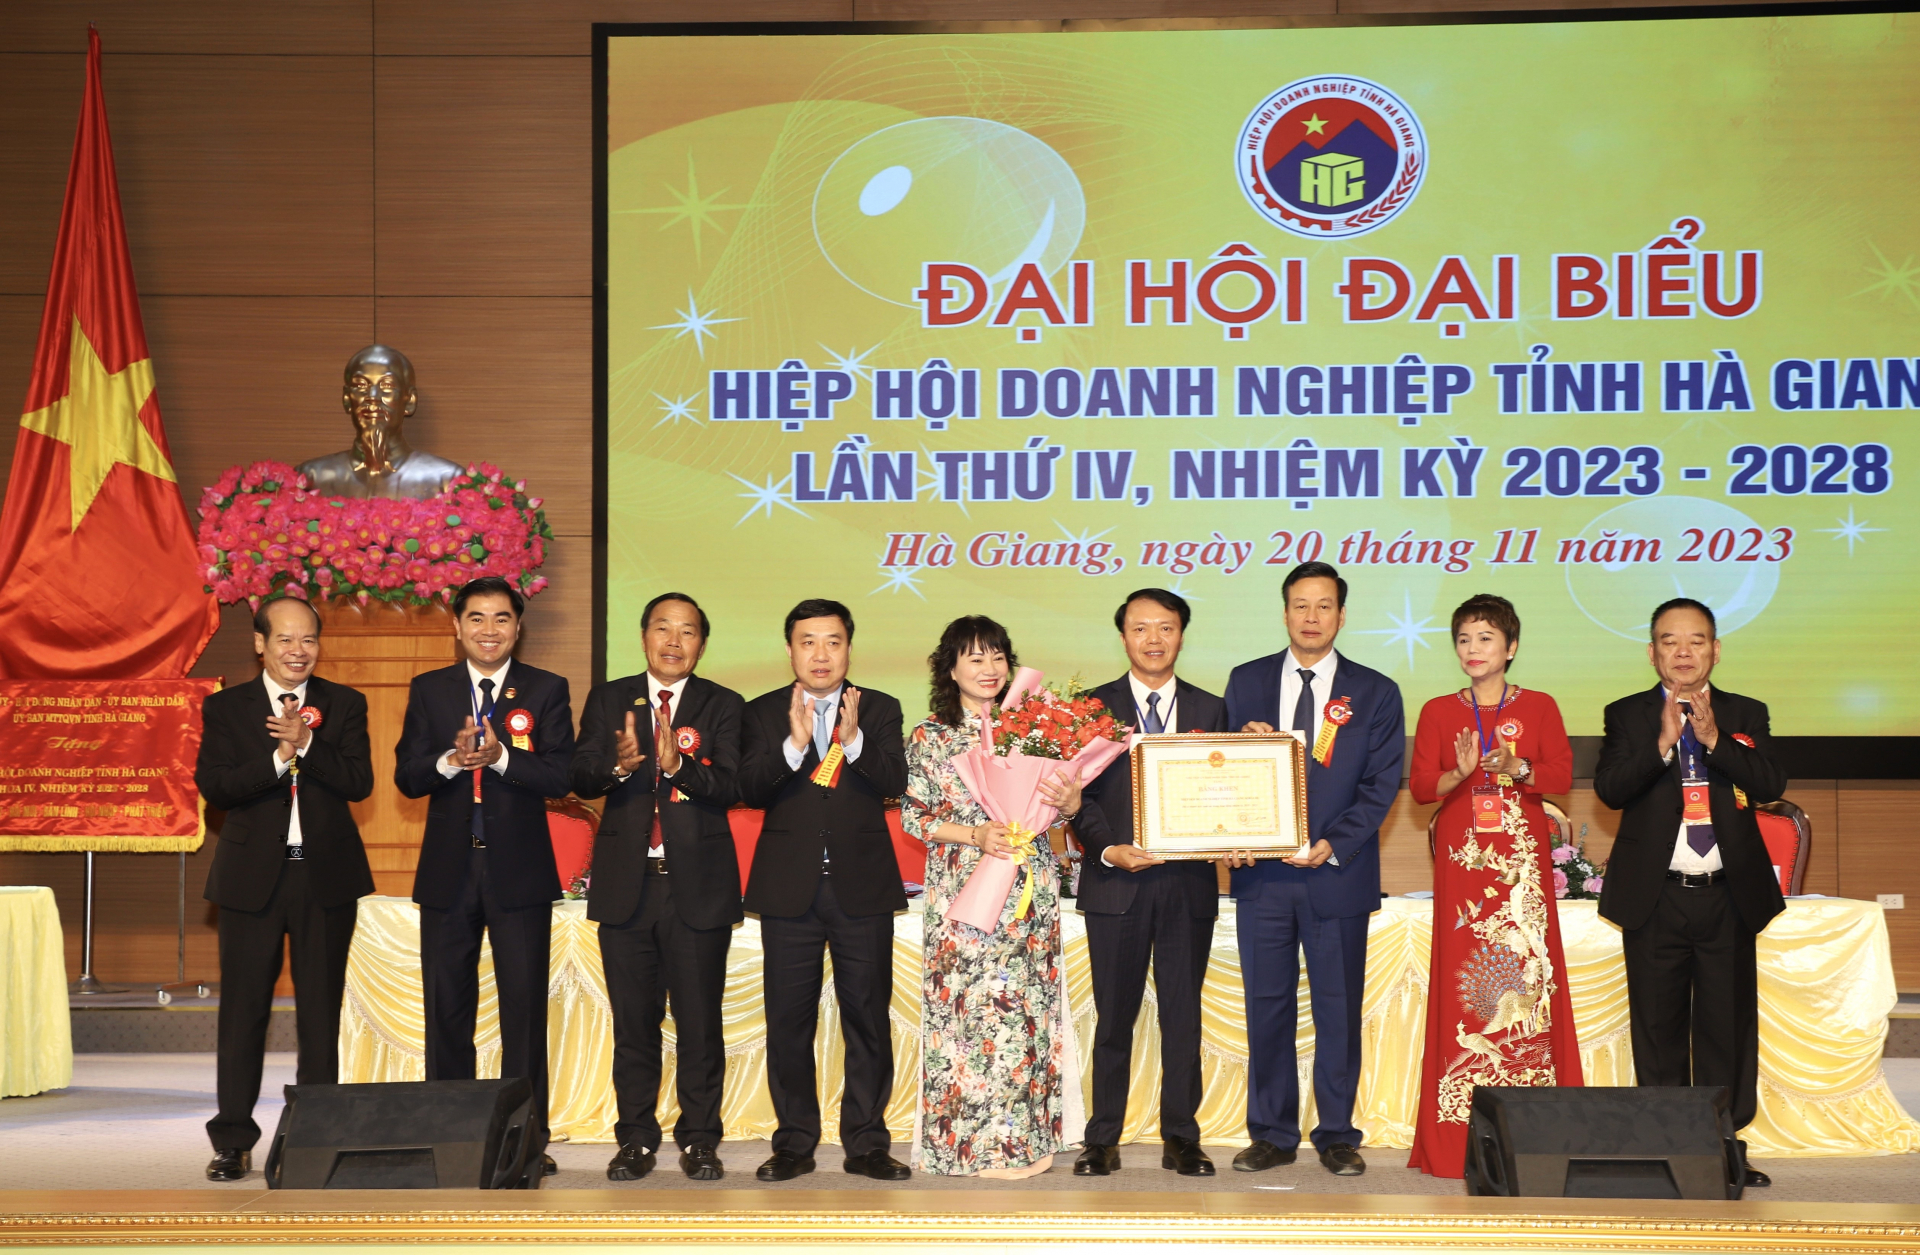 Chủ tịch UBND tỉnh Nguyễn Văn Sơn tặng Bằng khen cho Hiệp hội Doanh nghiệp tỉnh